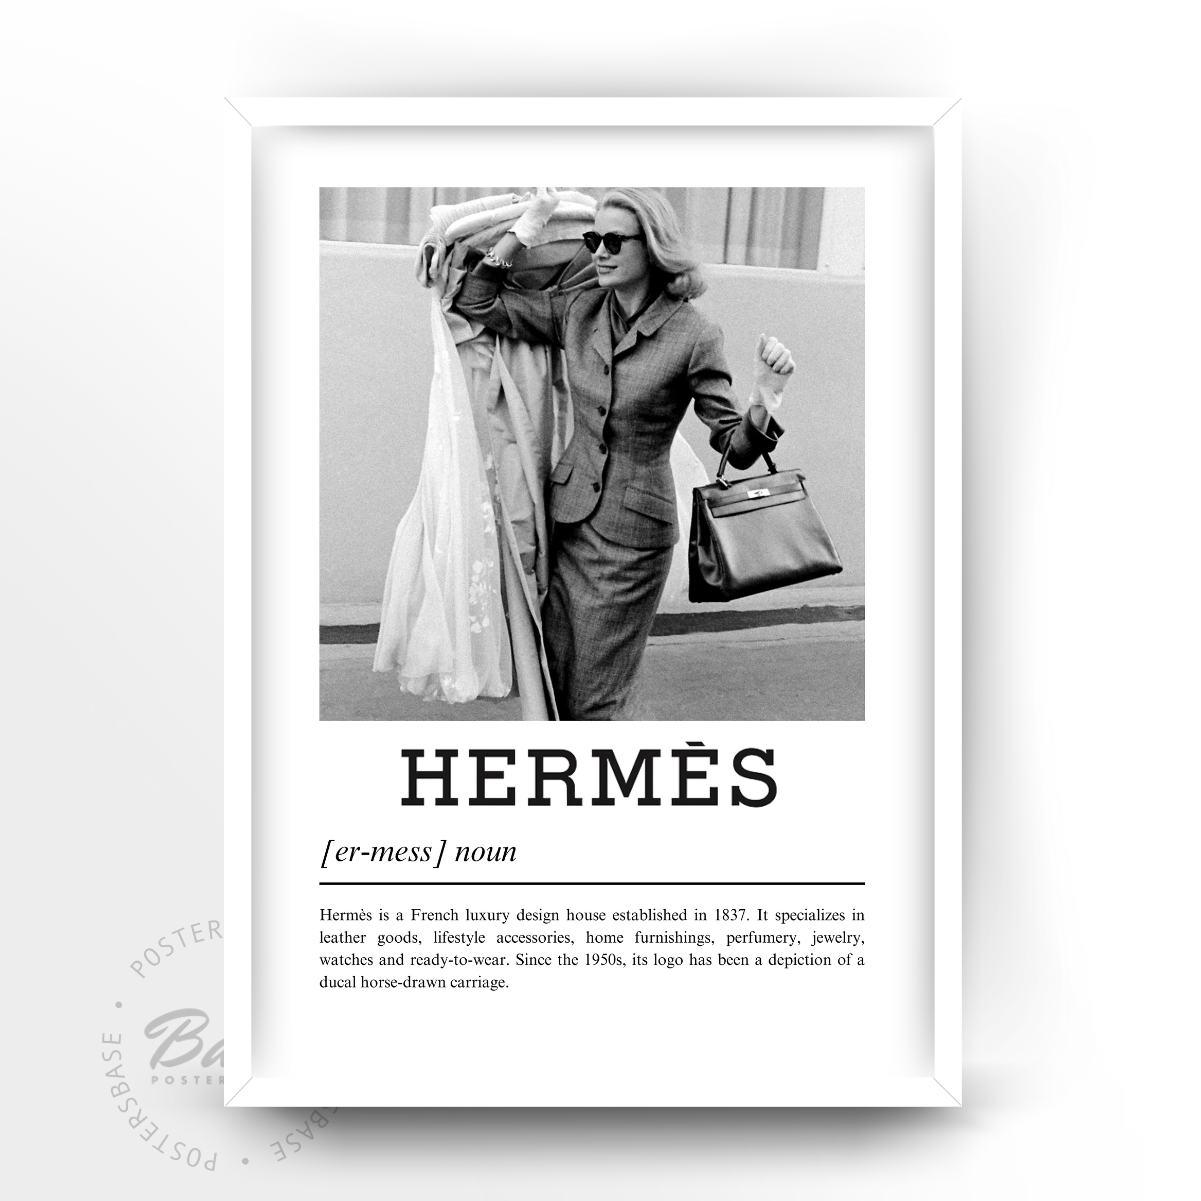 Hermès History